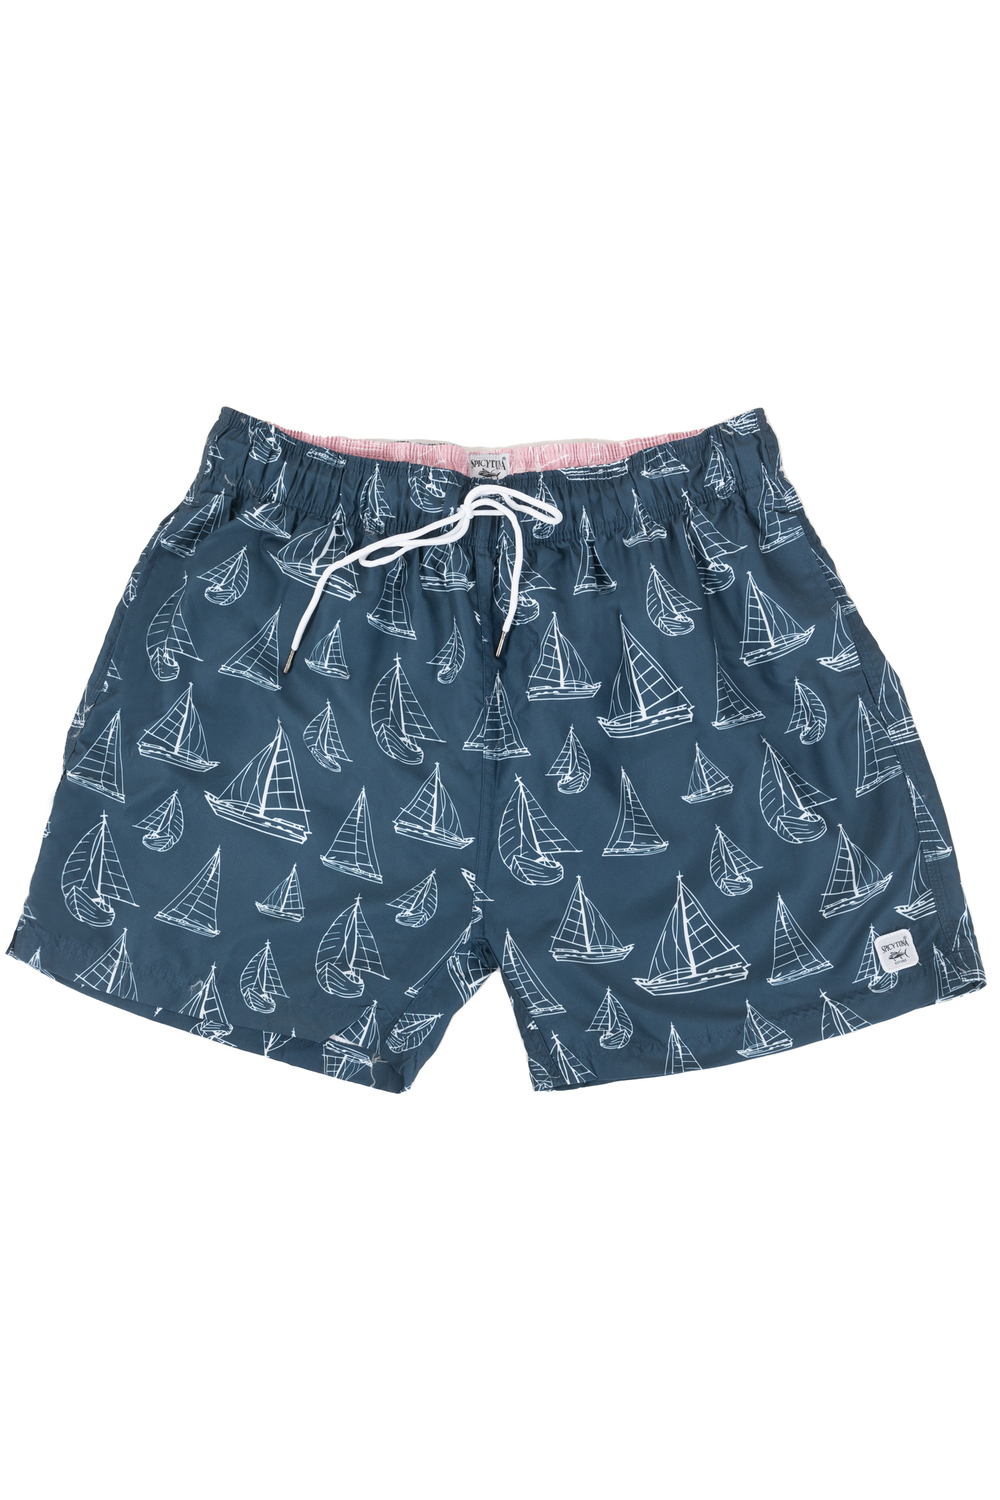 Spicy Tuna - Men's swim trunk - Sailboats - Plus Size. Colour